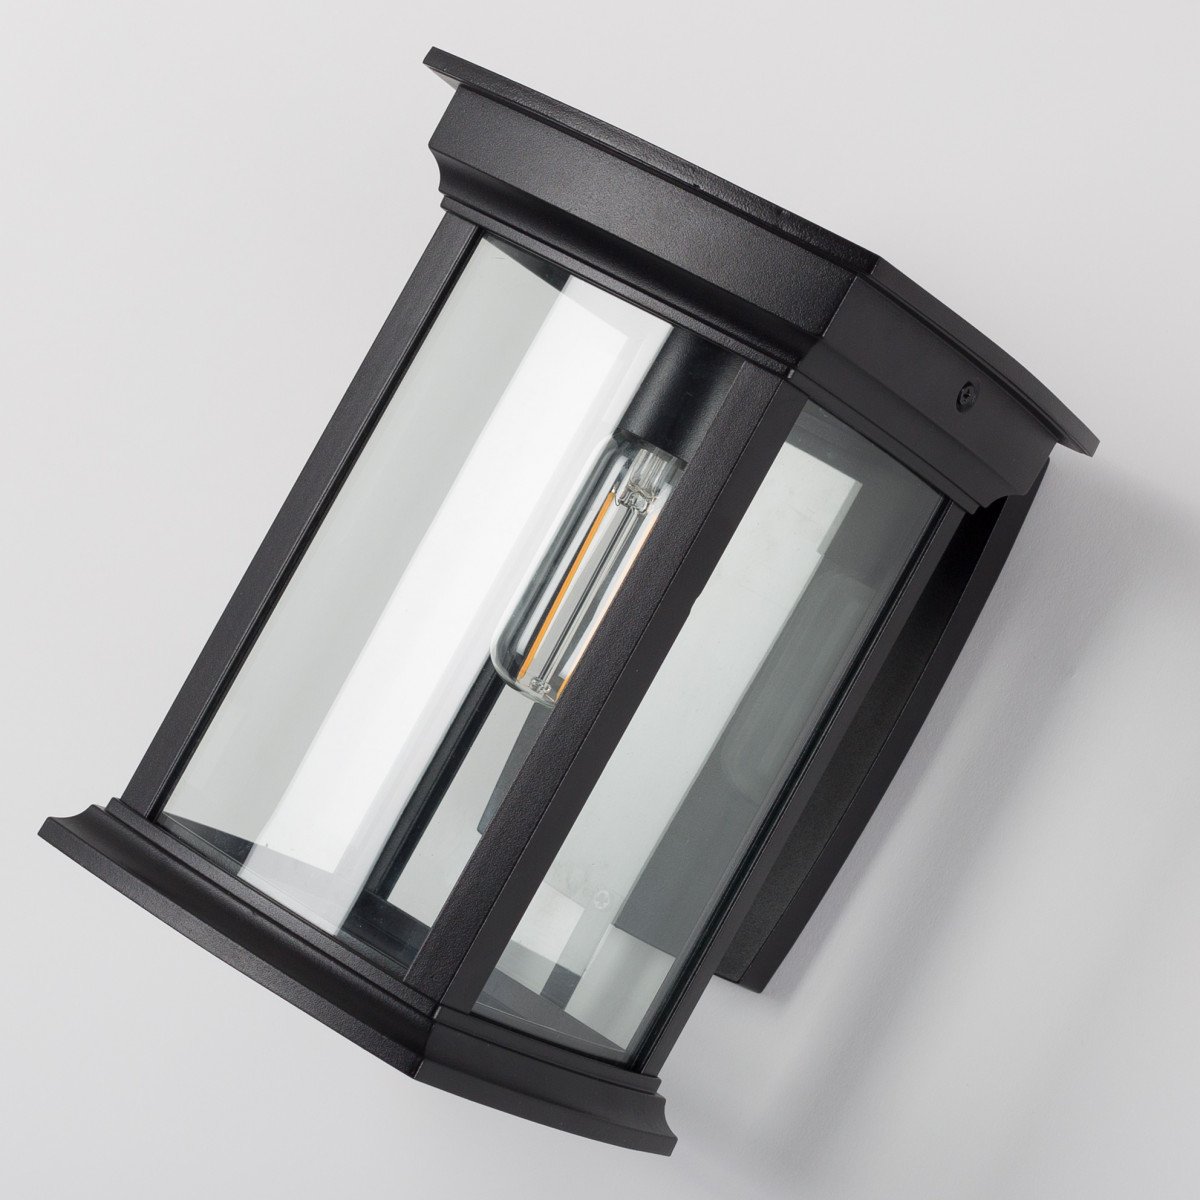 Zwarte wandlamp voor buiten, vierkante muursteun, lantaarnkap met zwart frame en heldere ruitjes, lichtbron boven in de kap, zichtbaar in het armatuur